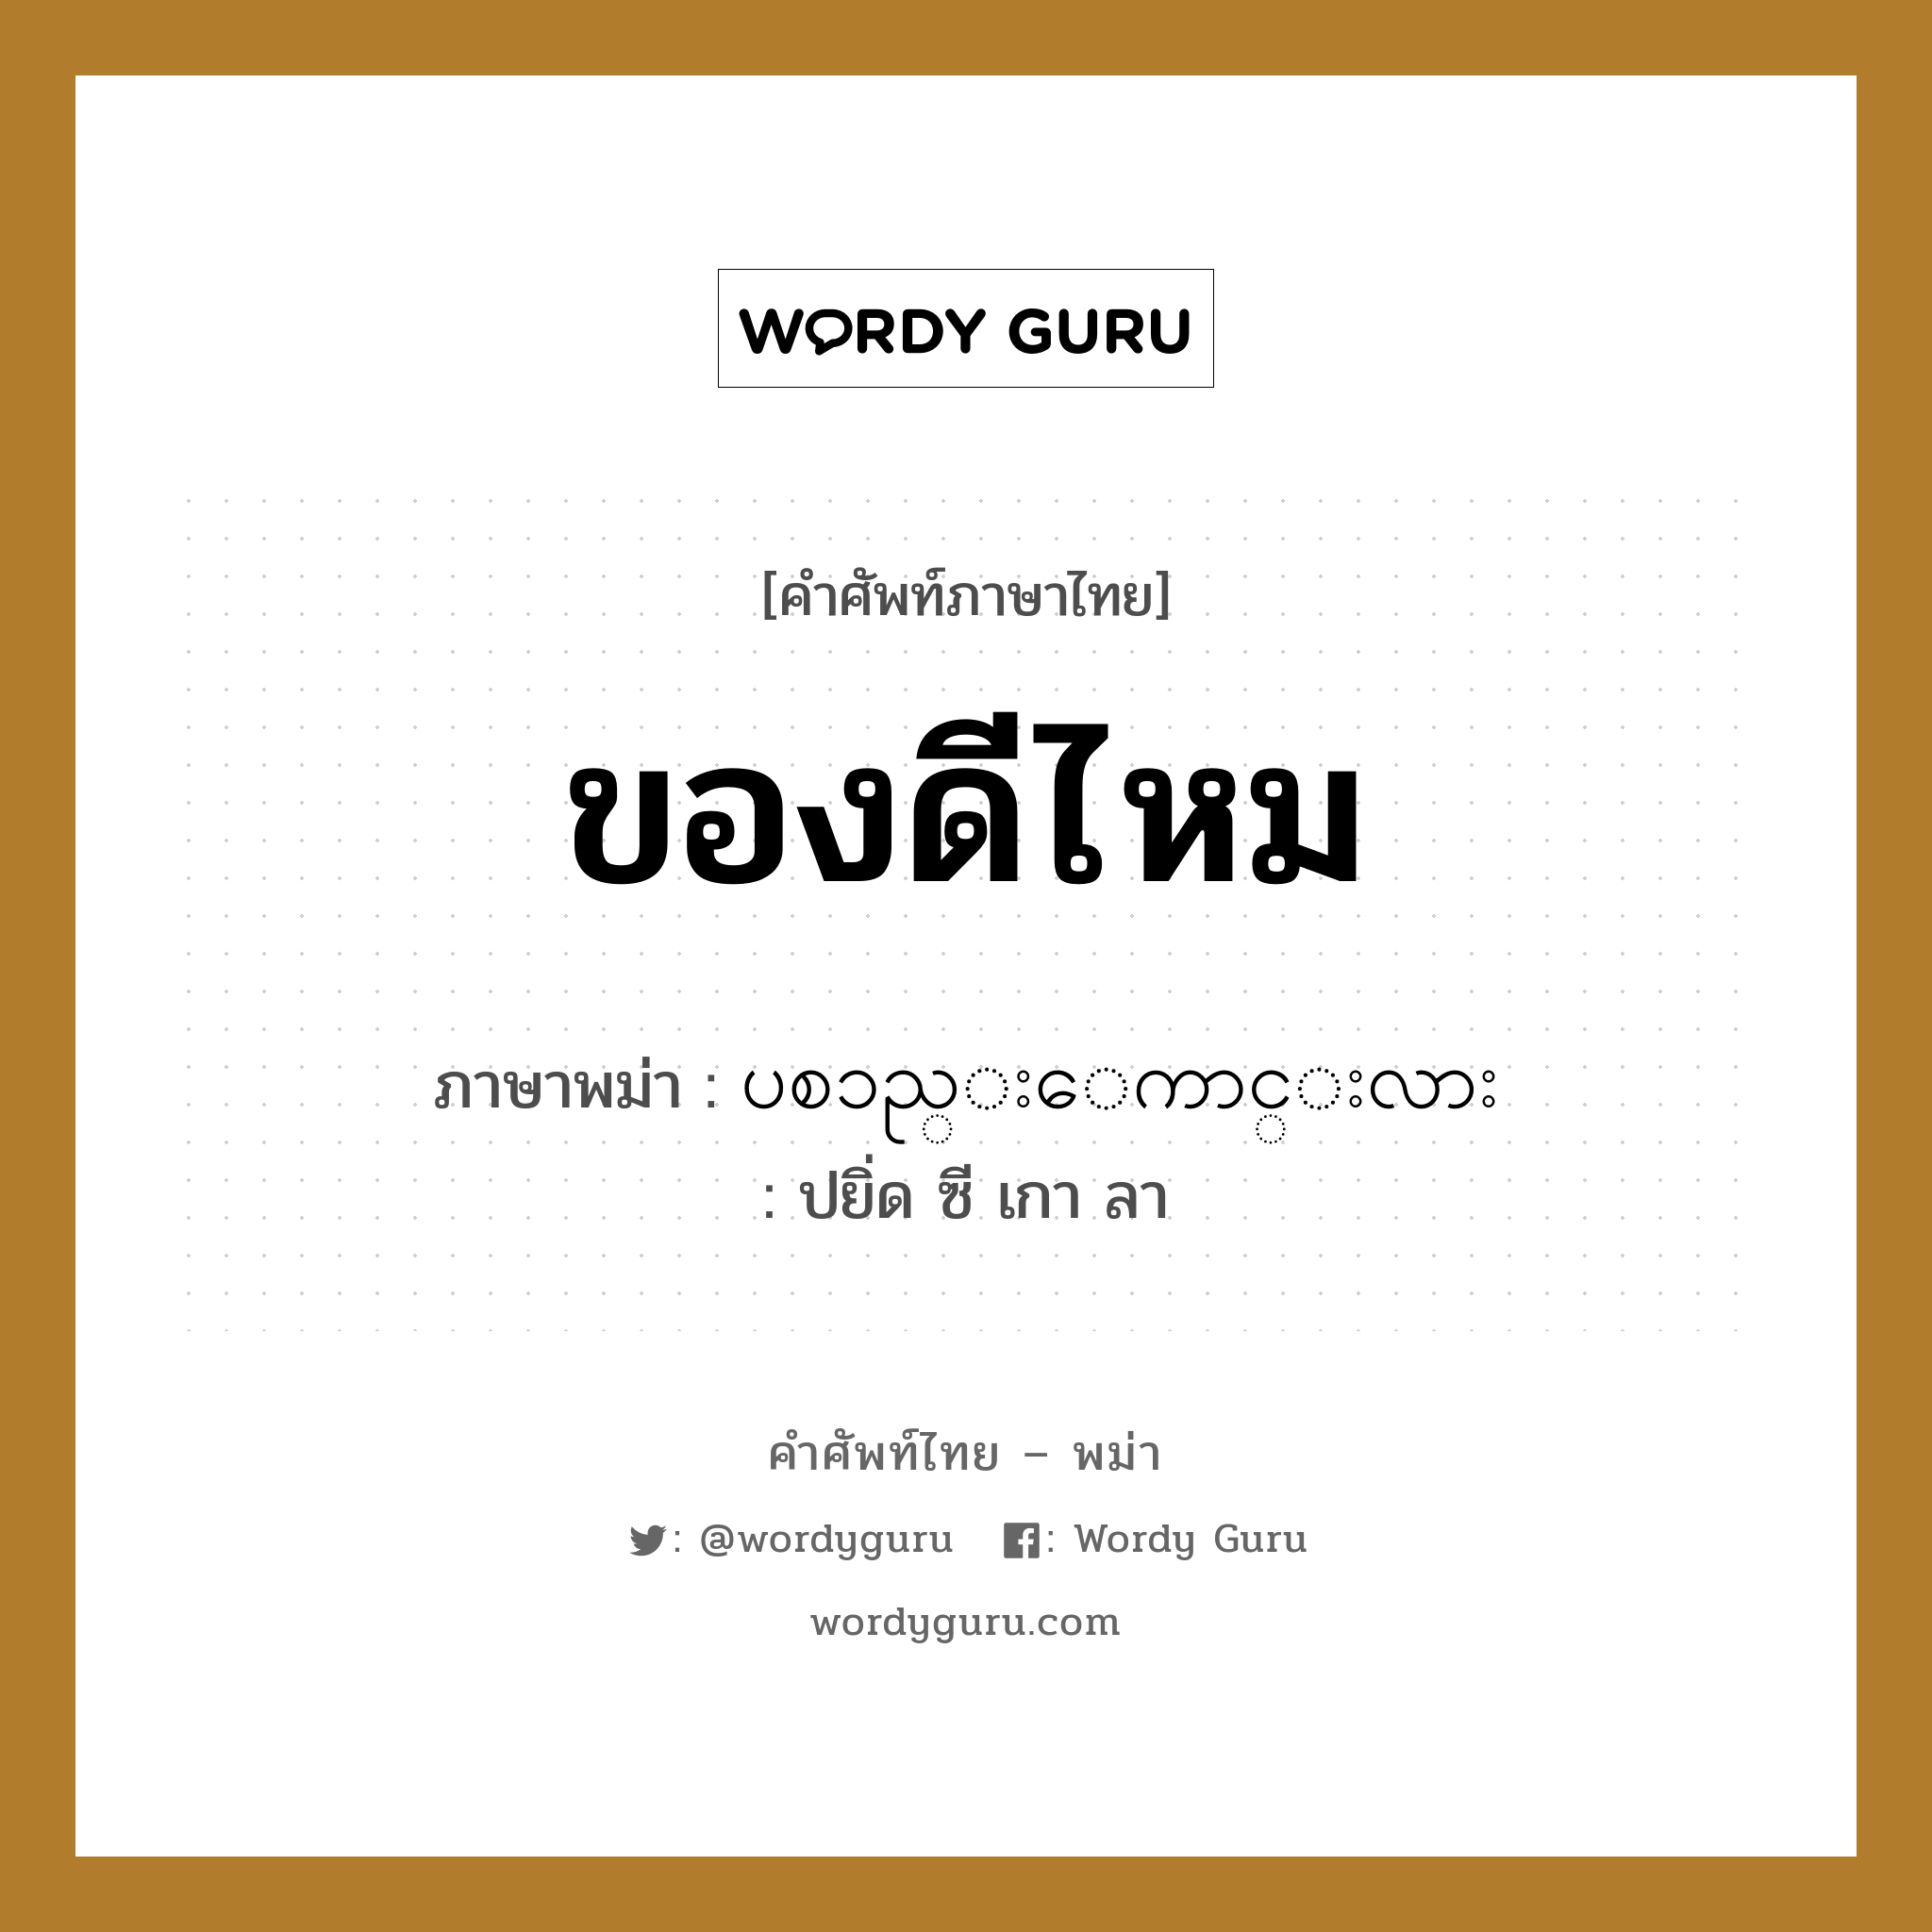 ของดีไหม ภาษาพม่าคืออะไร, คำศัพท์ภาษาไทย - พม่า ของดีไหม ภาษาพม่า ပစၥည္းေကာင္းလား หมวด บทสนทนาการซื้อขาย ปยิ่ด ซี เกา ลา หมวด บทสนทนาการซื้อขาย